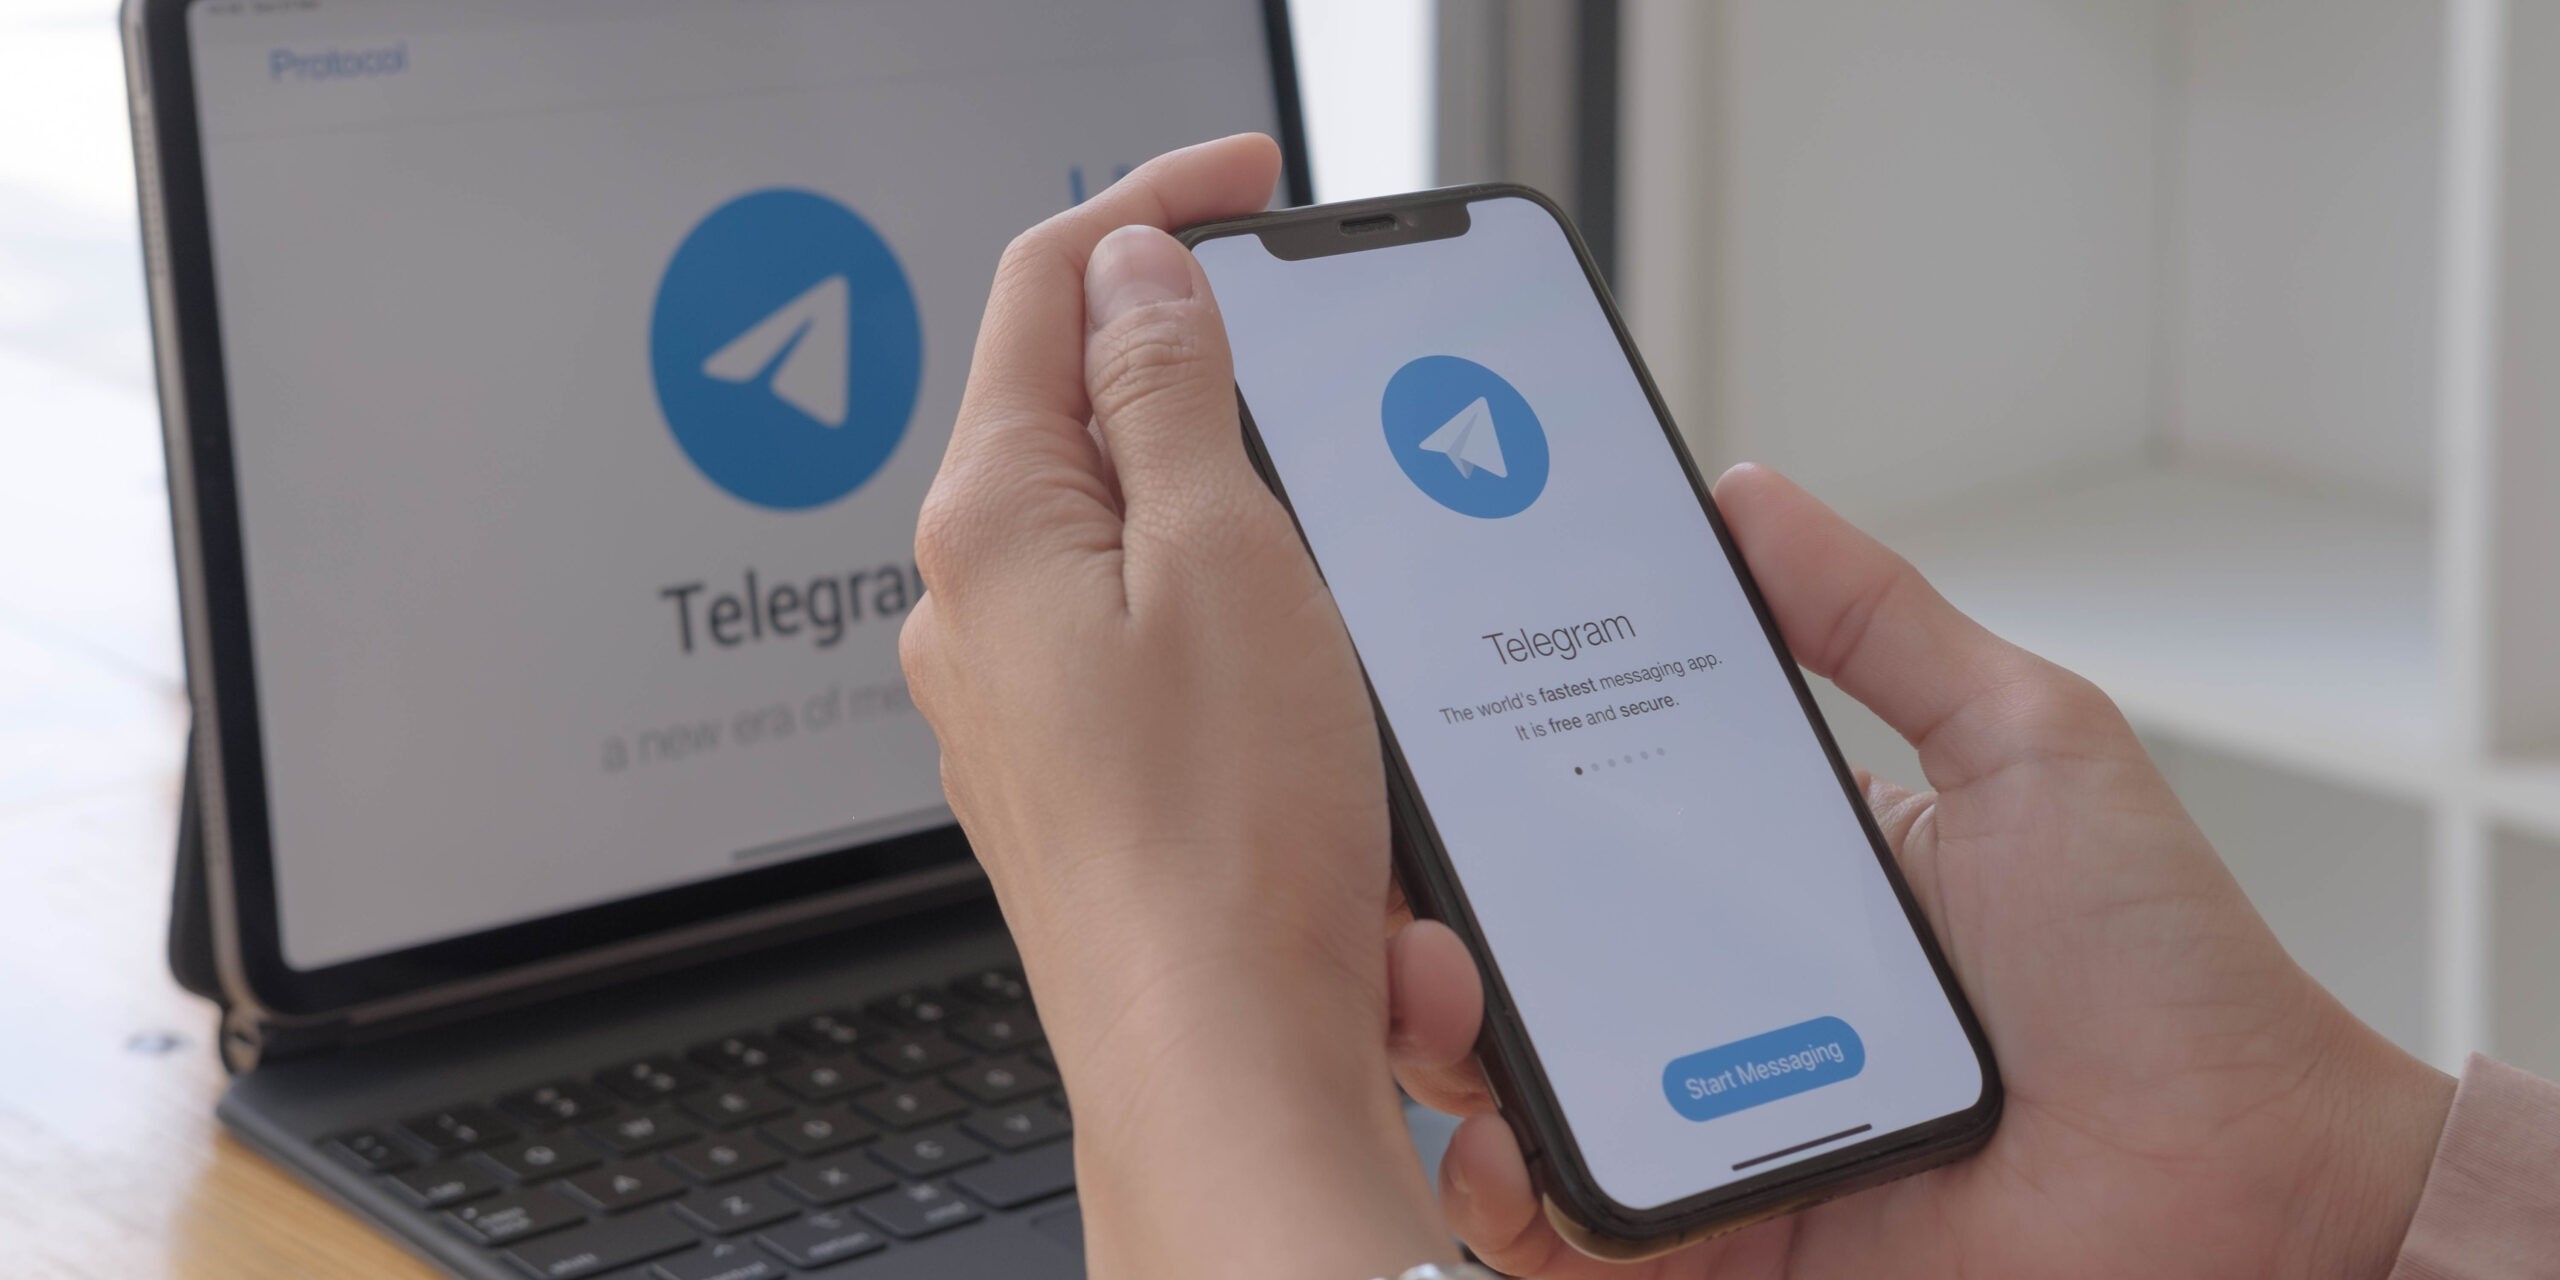 NKVC perspėja Telegramos vartotojus: Lietuvius bandoma įtraukti į nusikalstamą veiklą – MadeinVilnius.lt